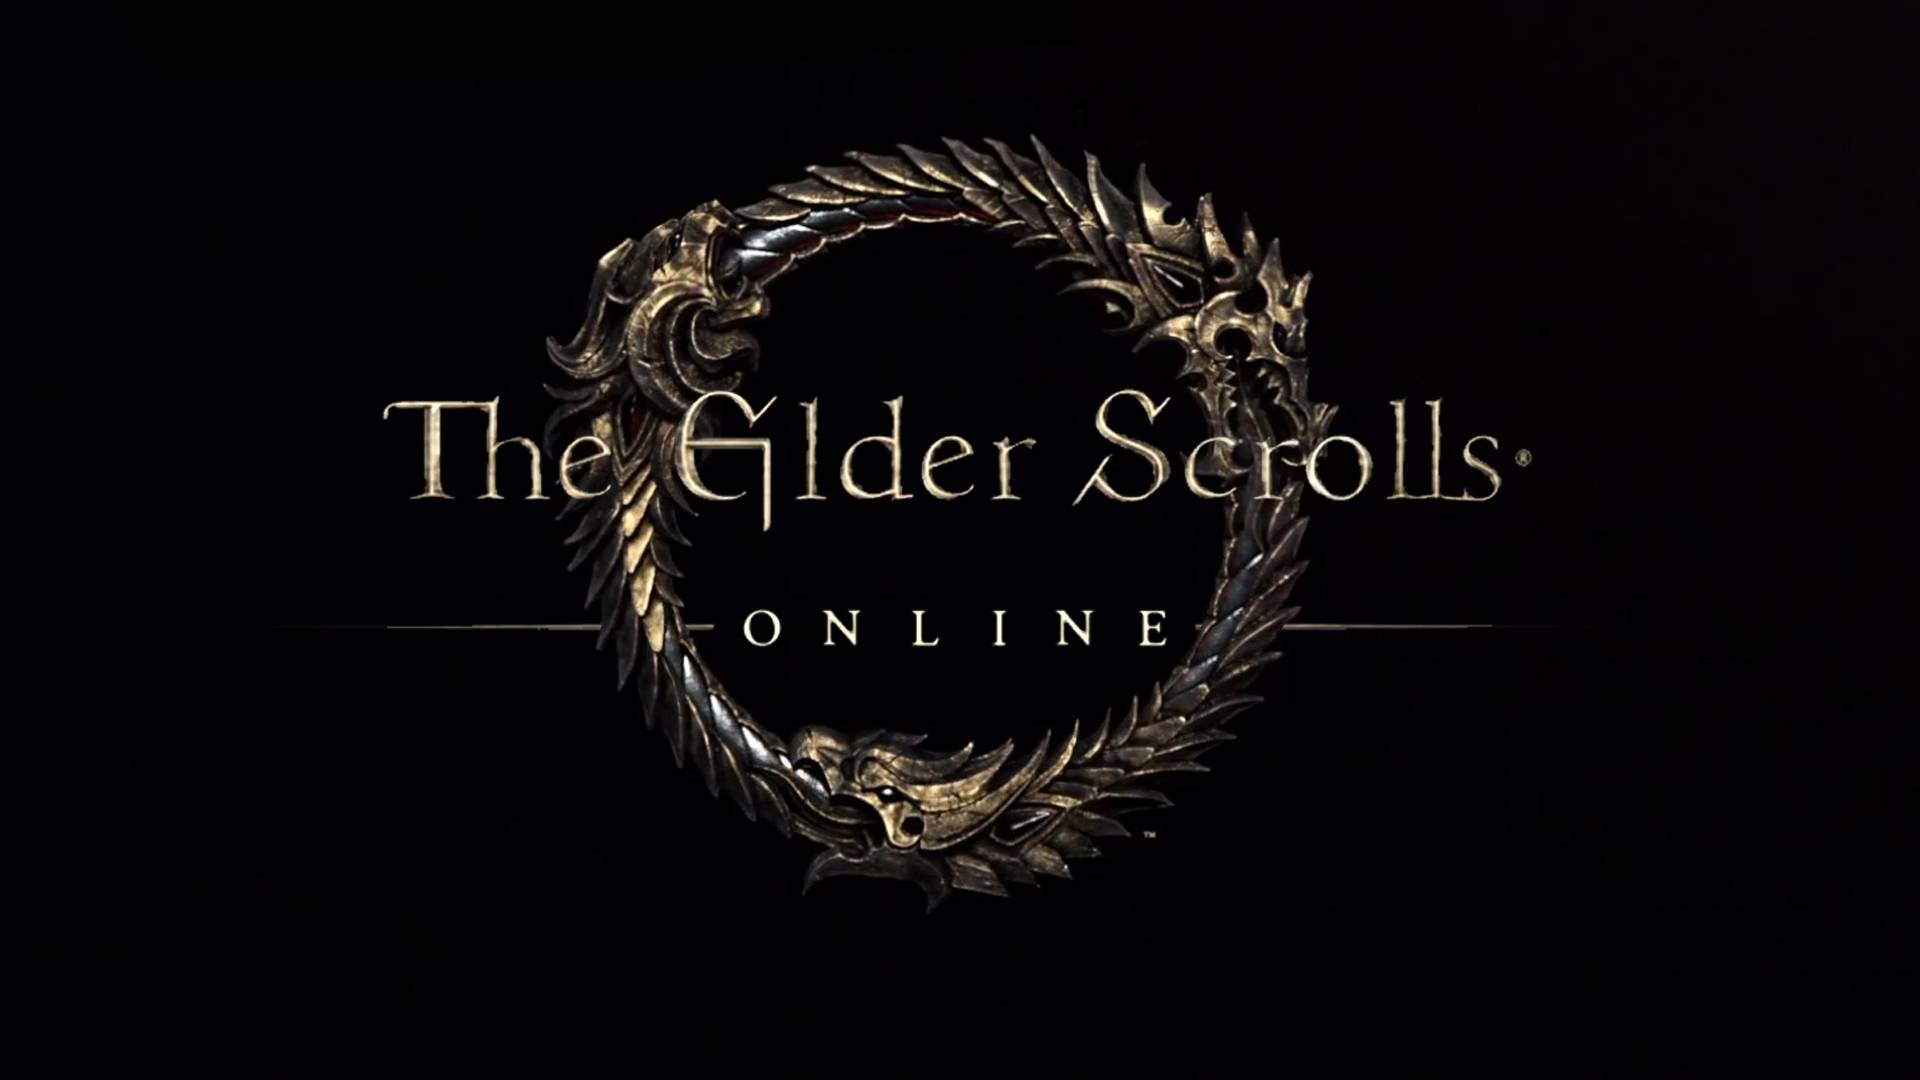 Foto (Reprodução): Elder Scrolls Online exclusivo para PC.